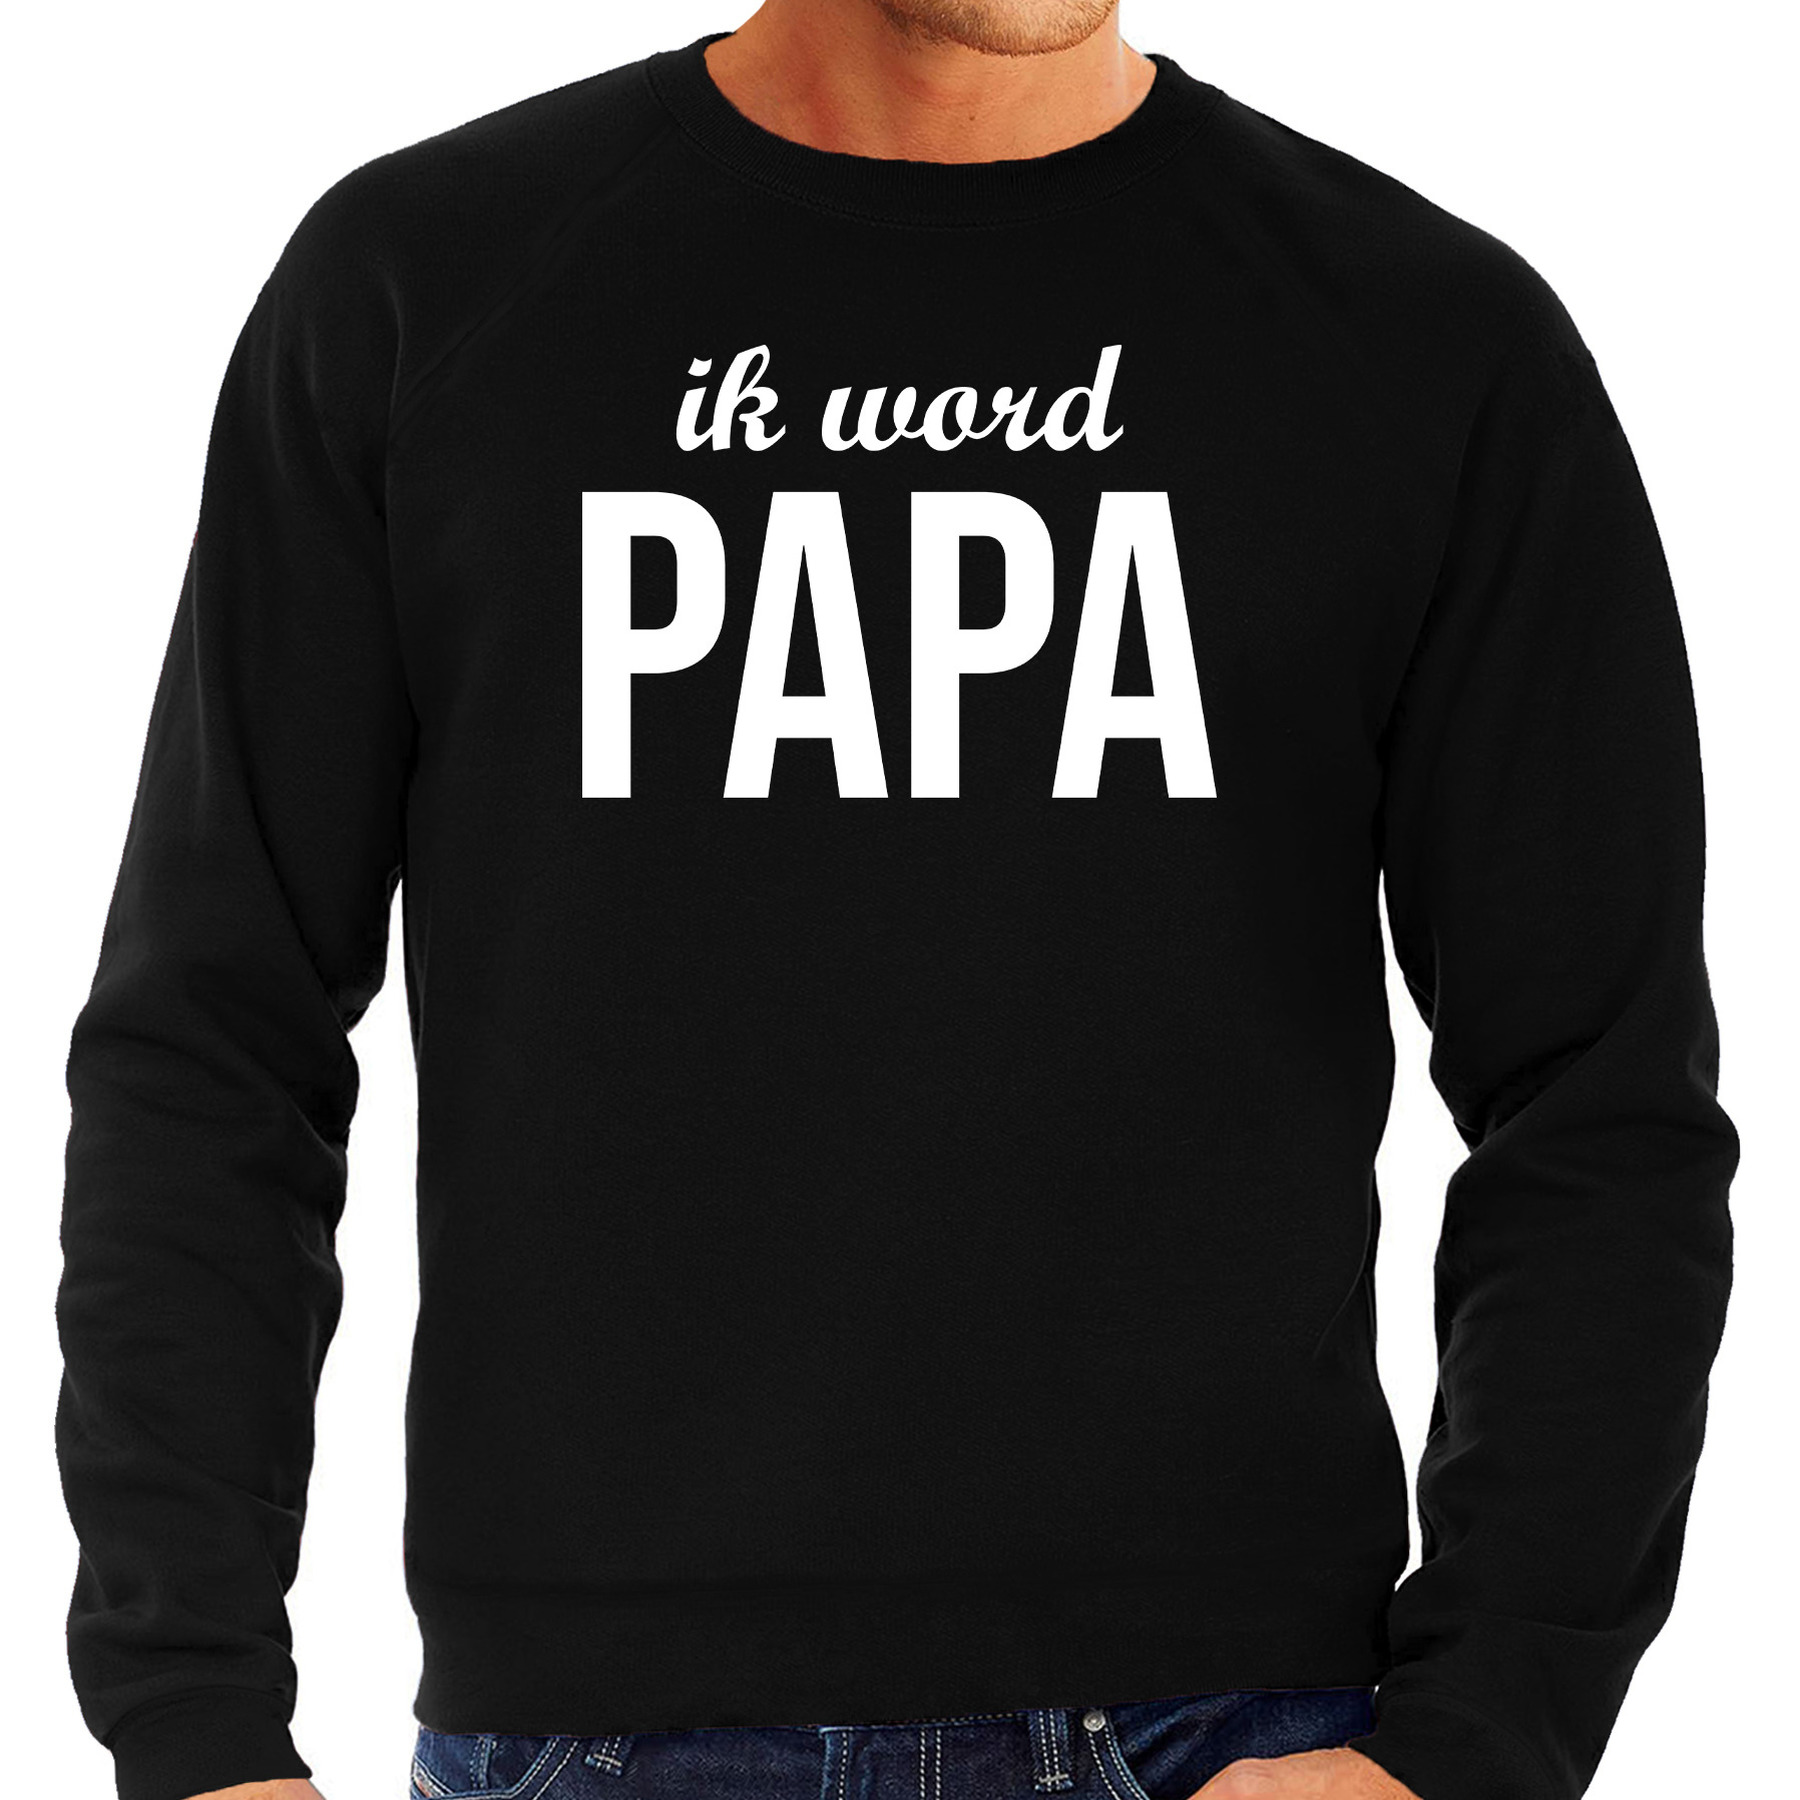 Ik word papa sweater / trui zwart voor heren - papa to be cadeau truien